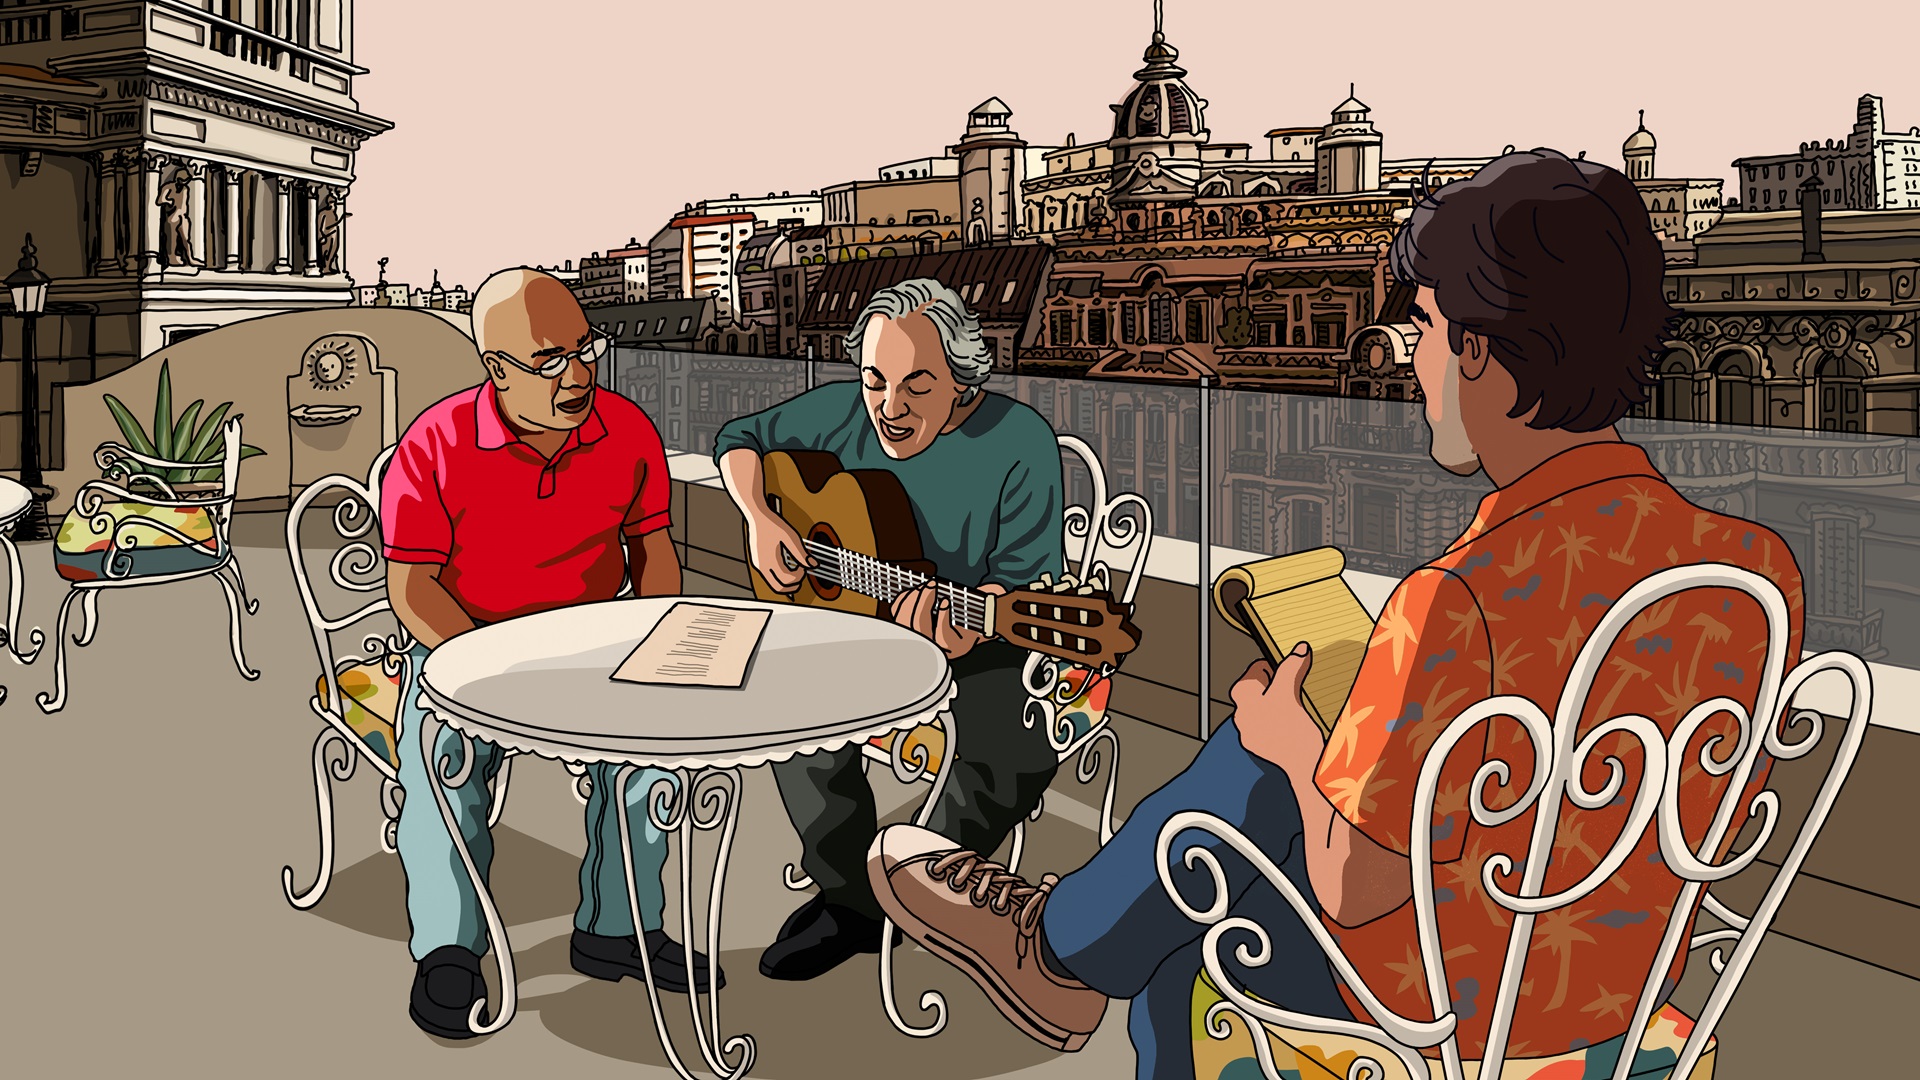 Drie mannen zitten op ene dakterras en zijn muziek aan het maken